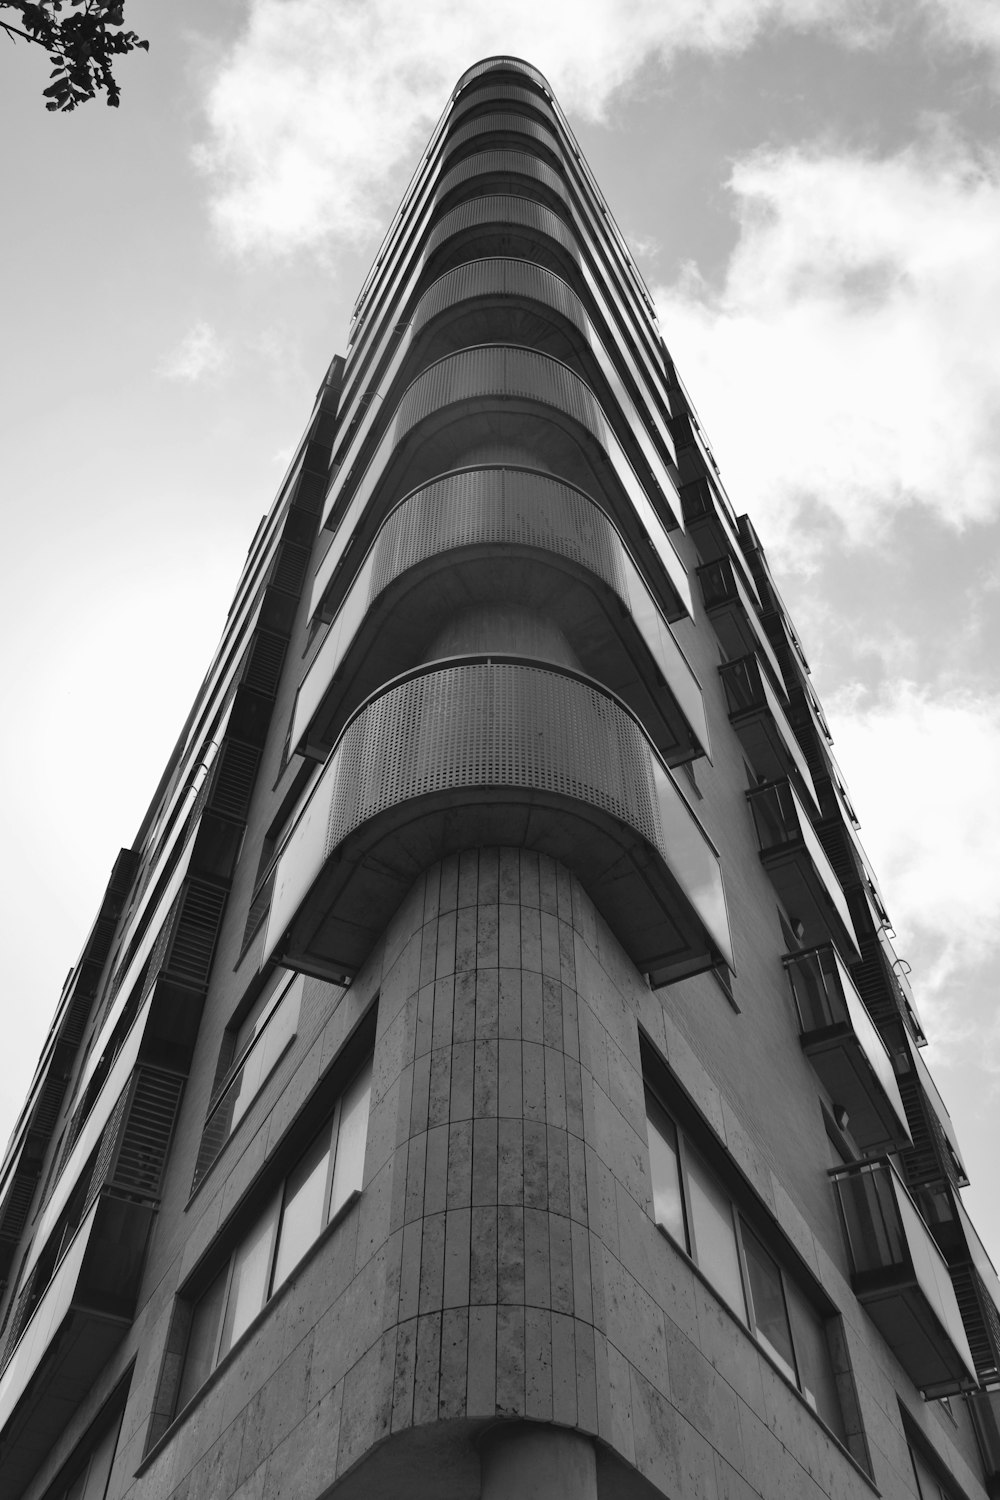 콘크리트 건물의 그레이스케일 사진